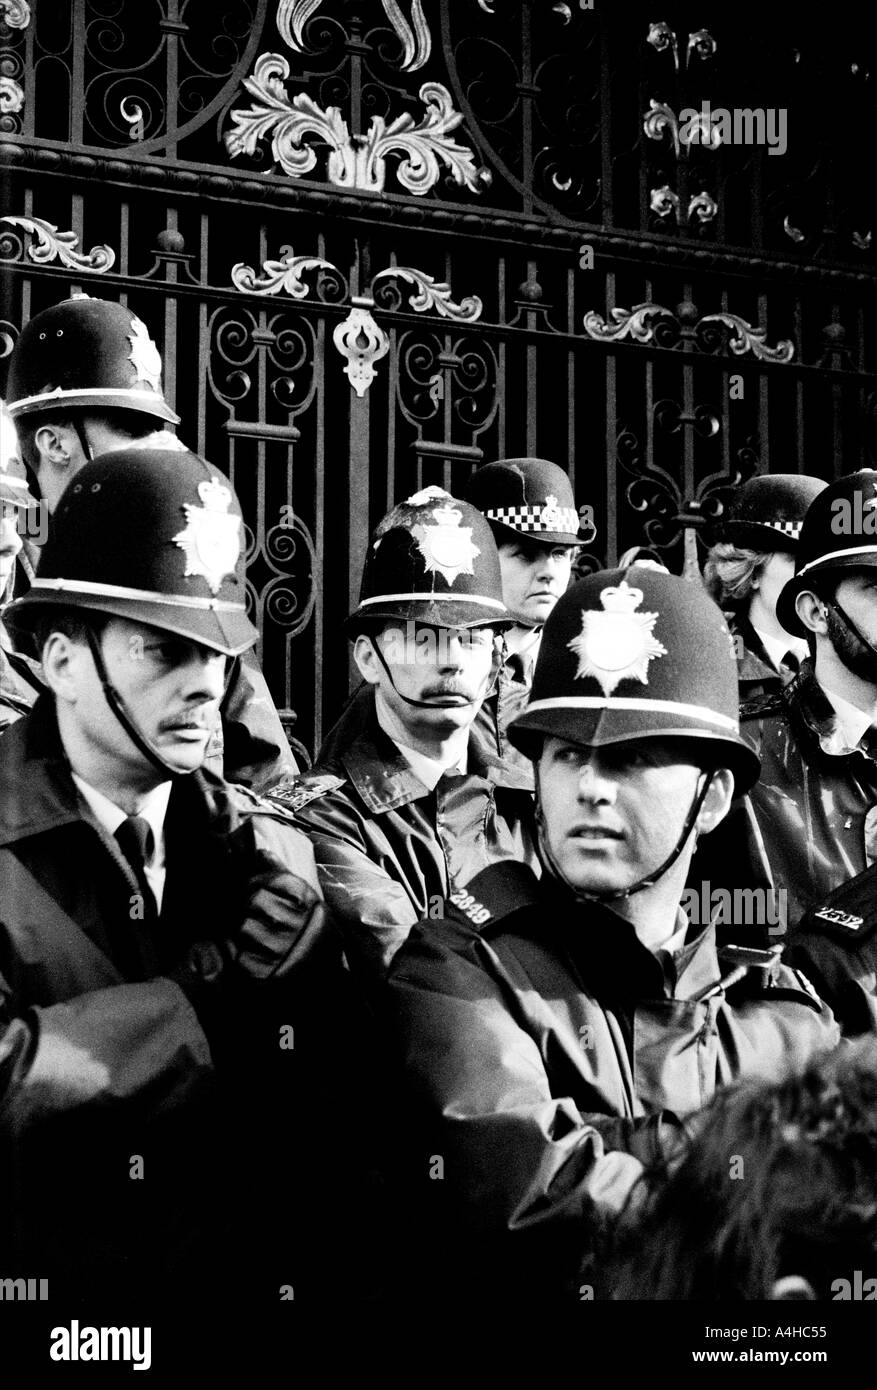 monochrome d'un groupe de policiers protégeant la mairie de sheffield pendant les émeutes fiscales de 1990 leurs uniformes tachés Banque D'Images